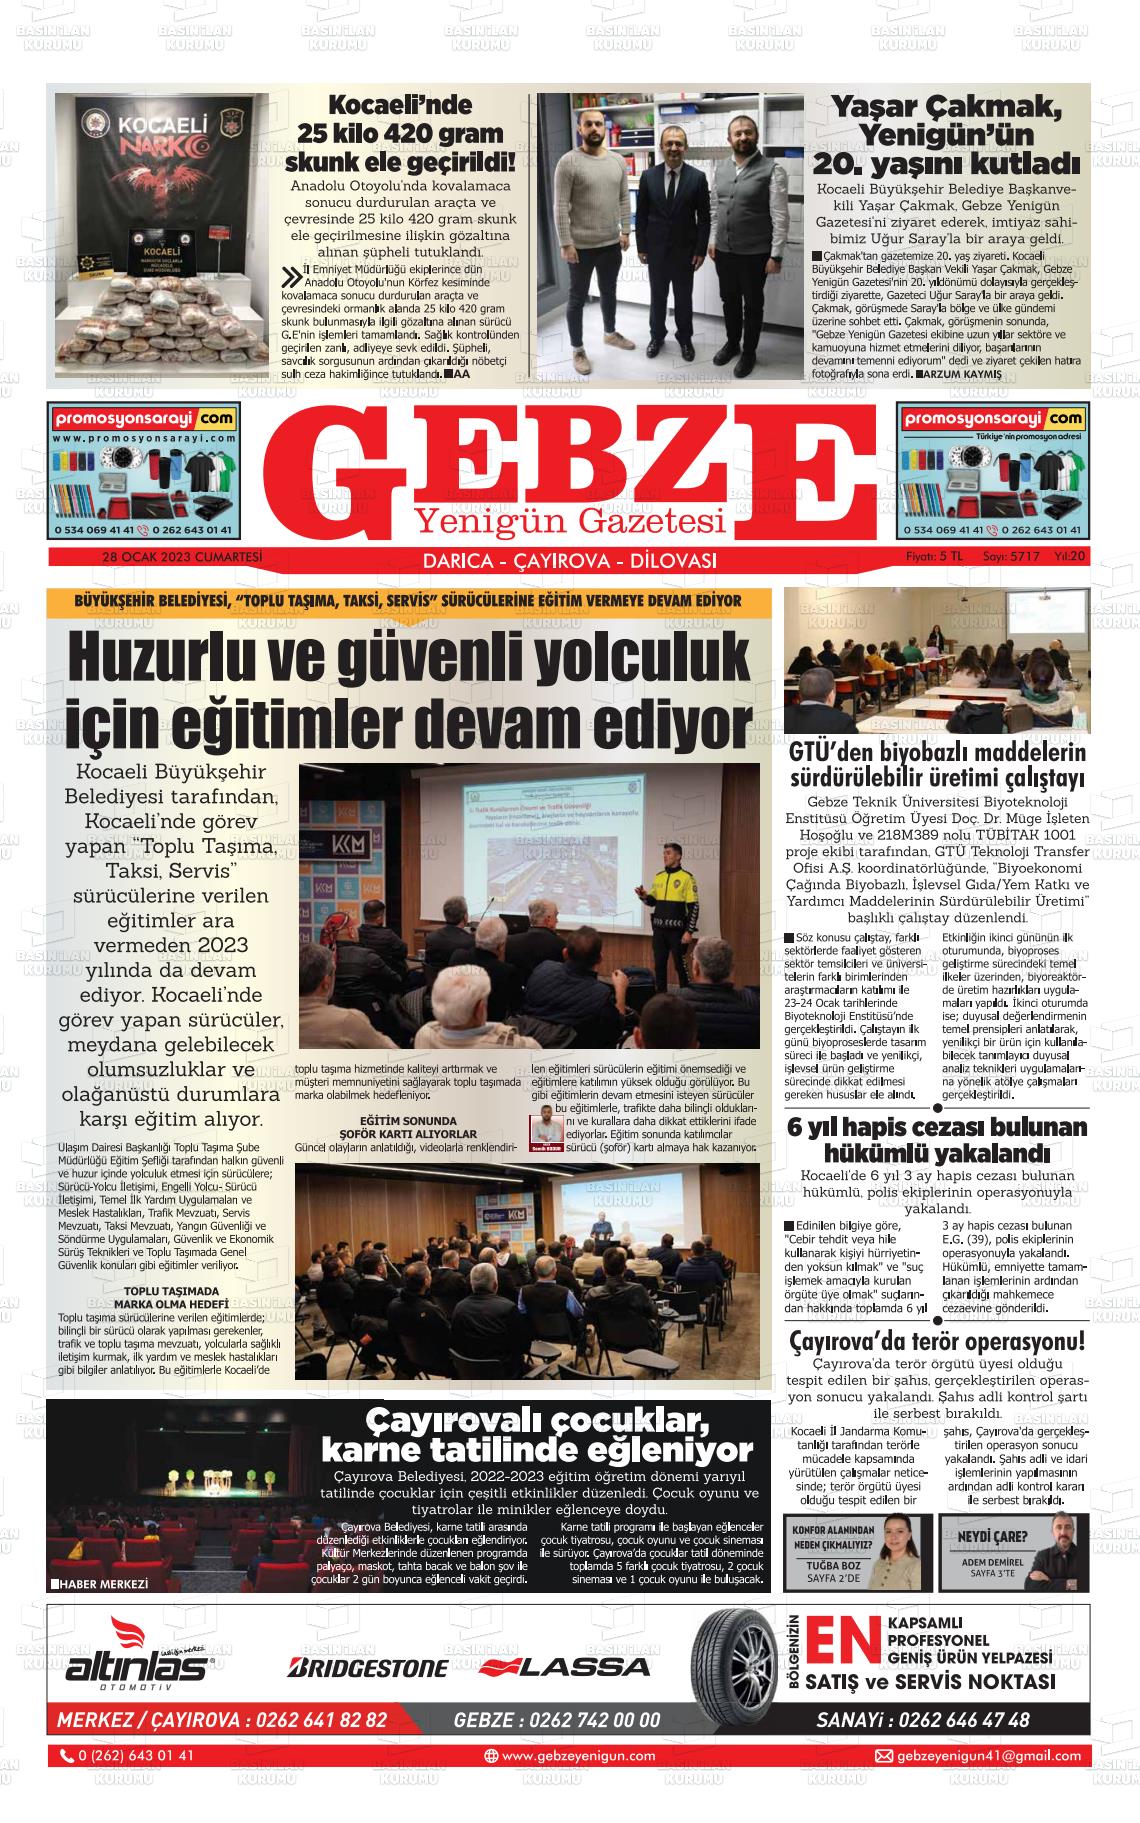 28 Ocak 2023 Gebze Yenigün Gazete Manşeti